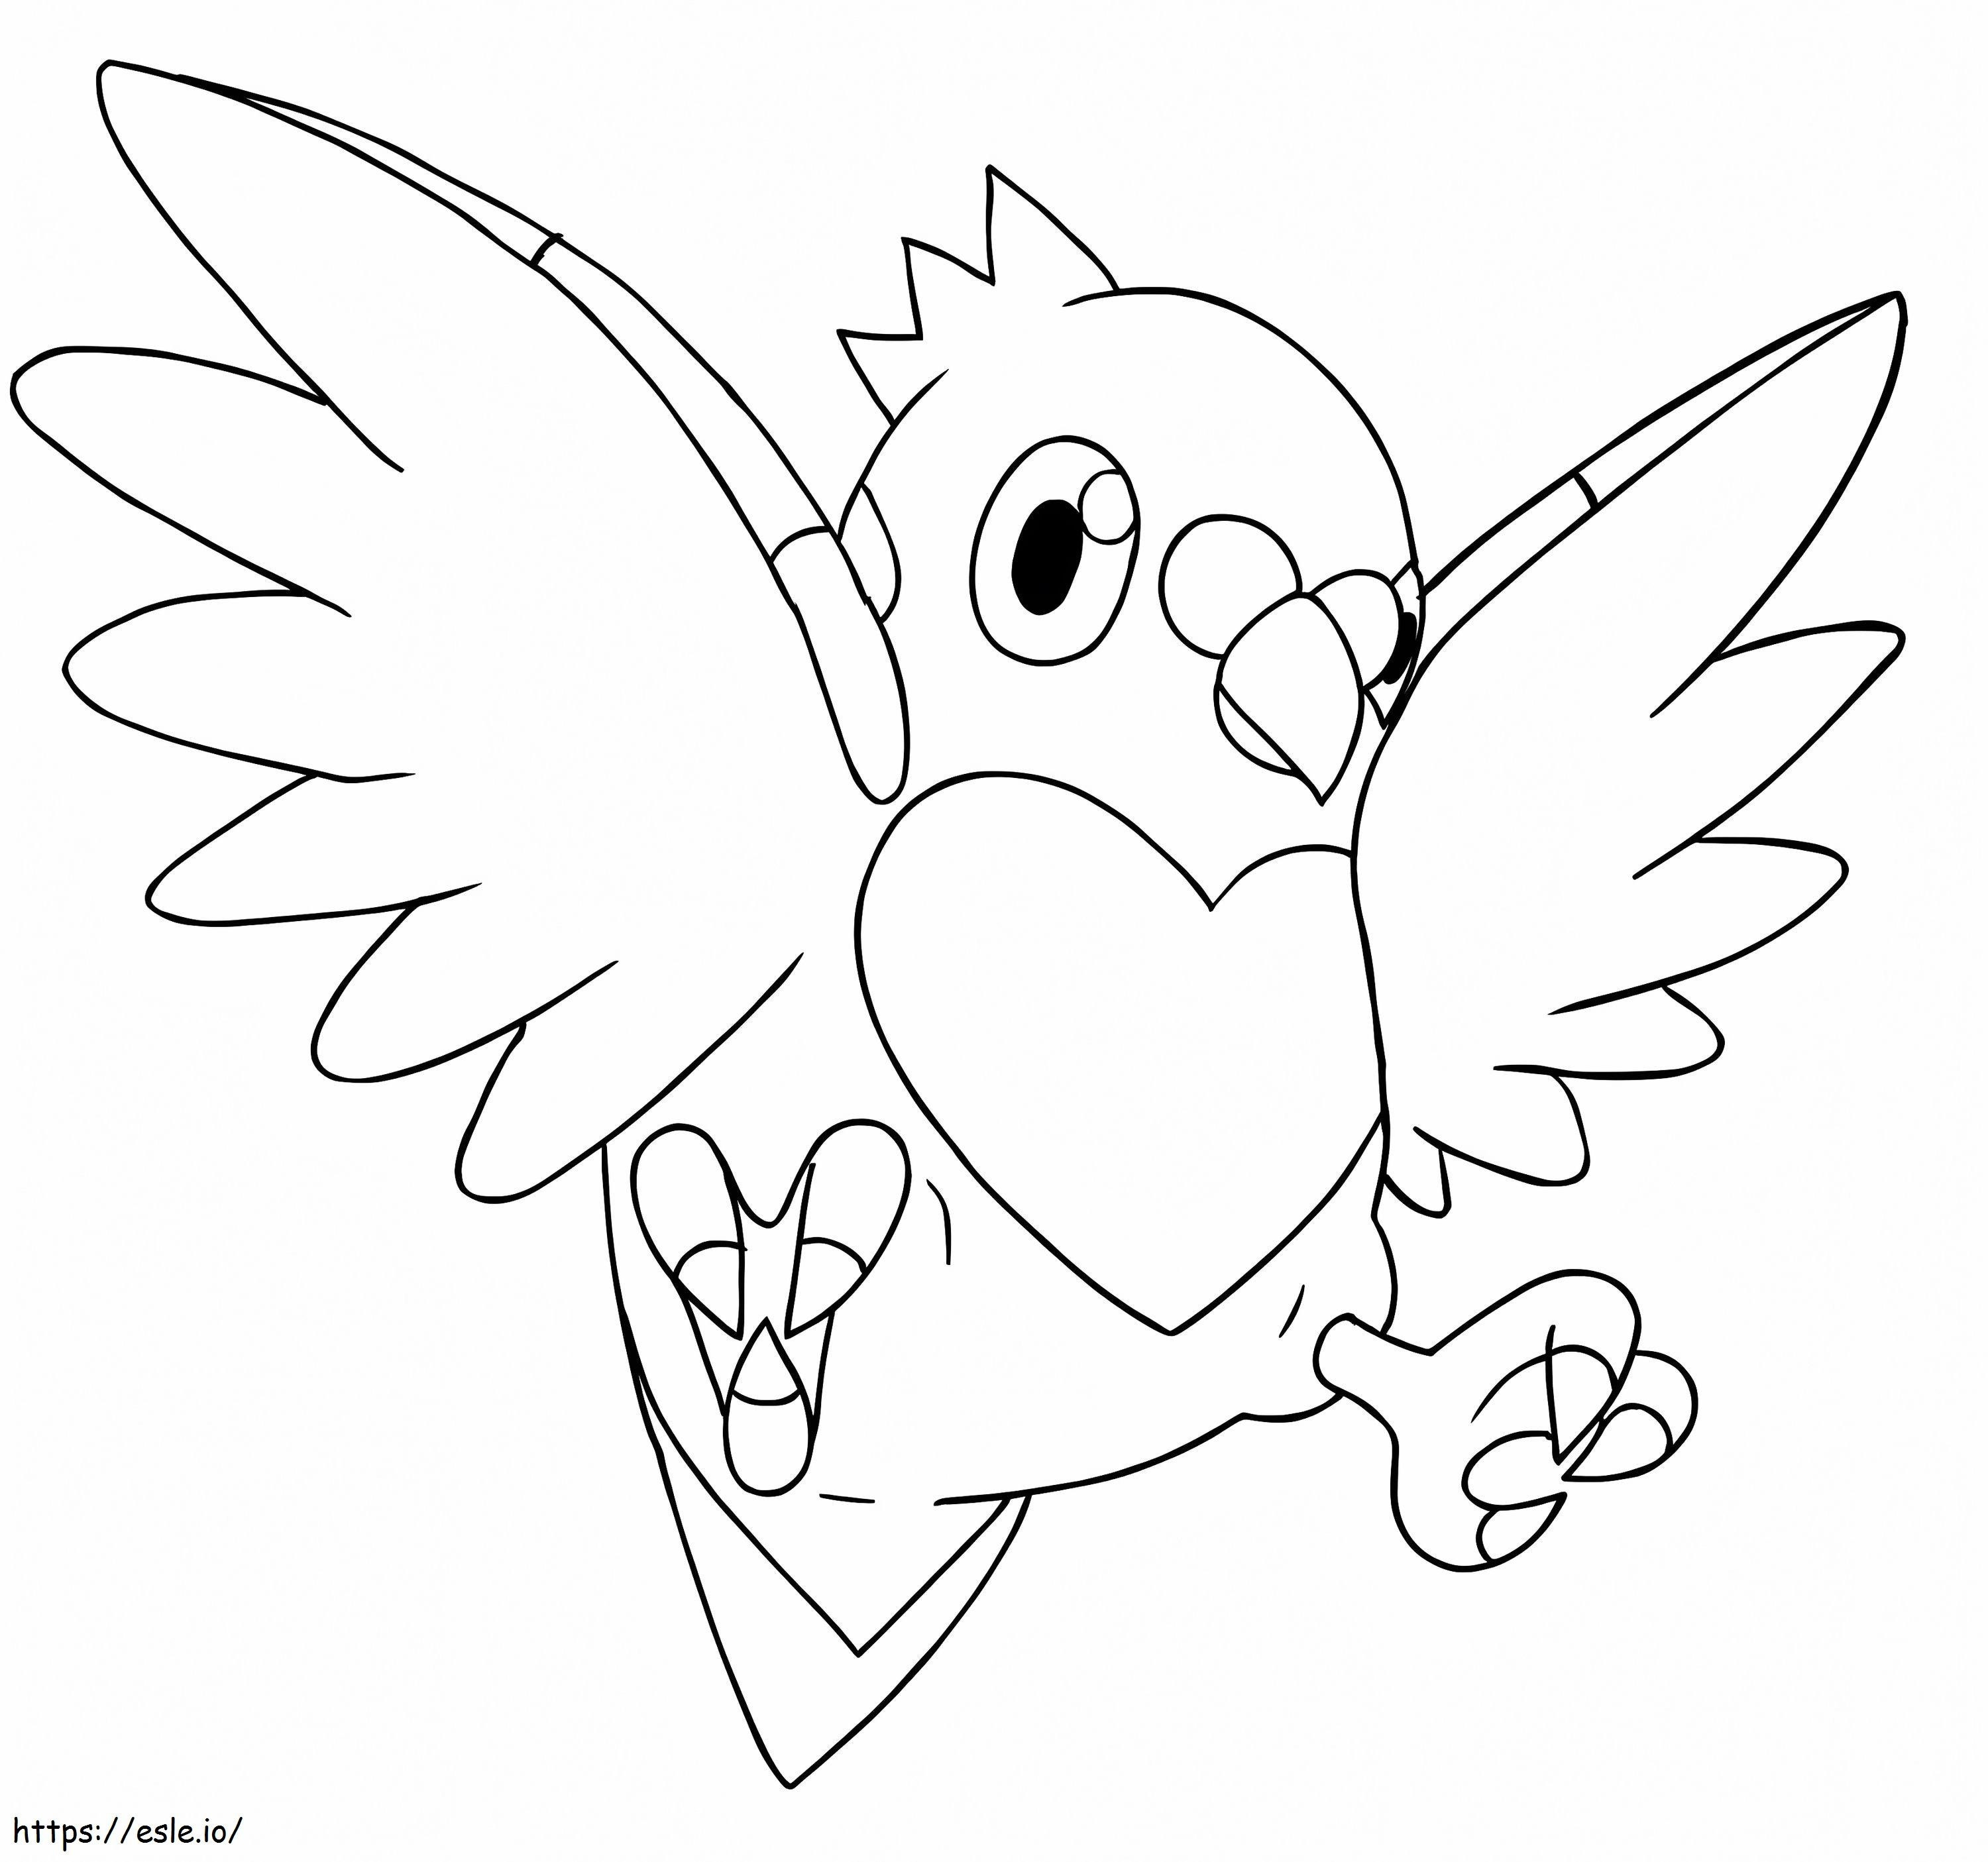 Coloriage Pidove Pokemon 1 à imprimer dessin